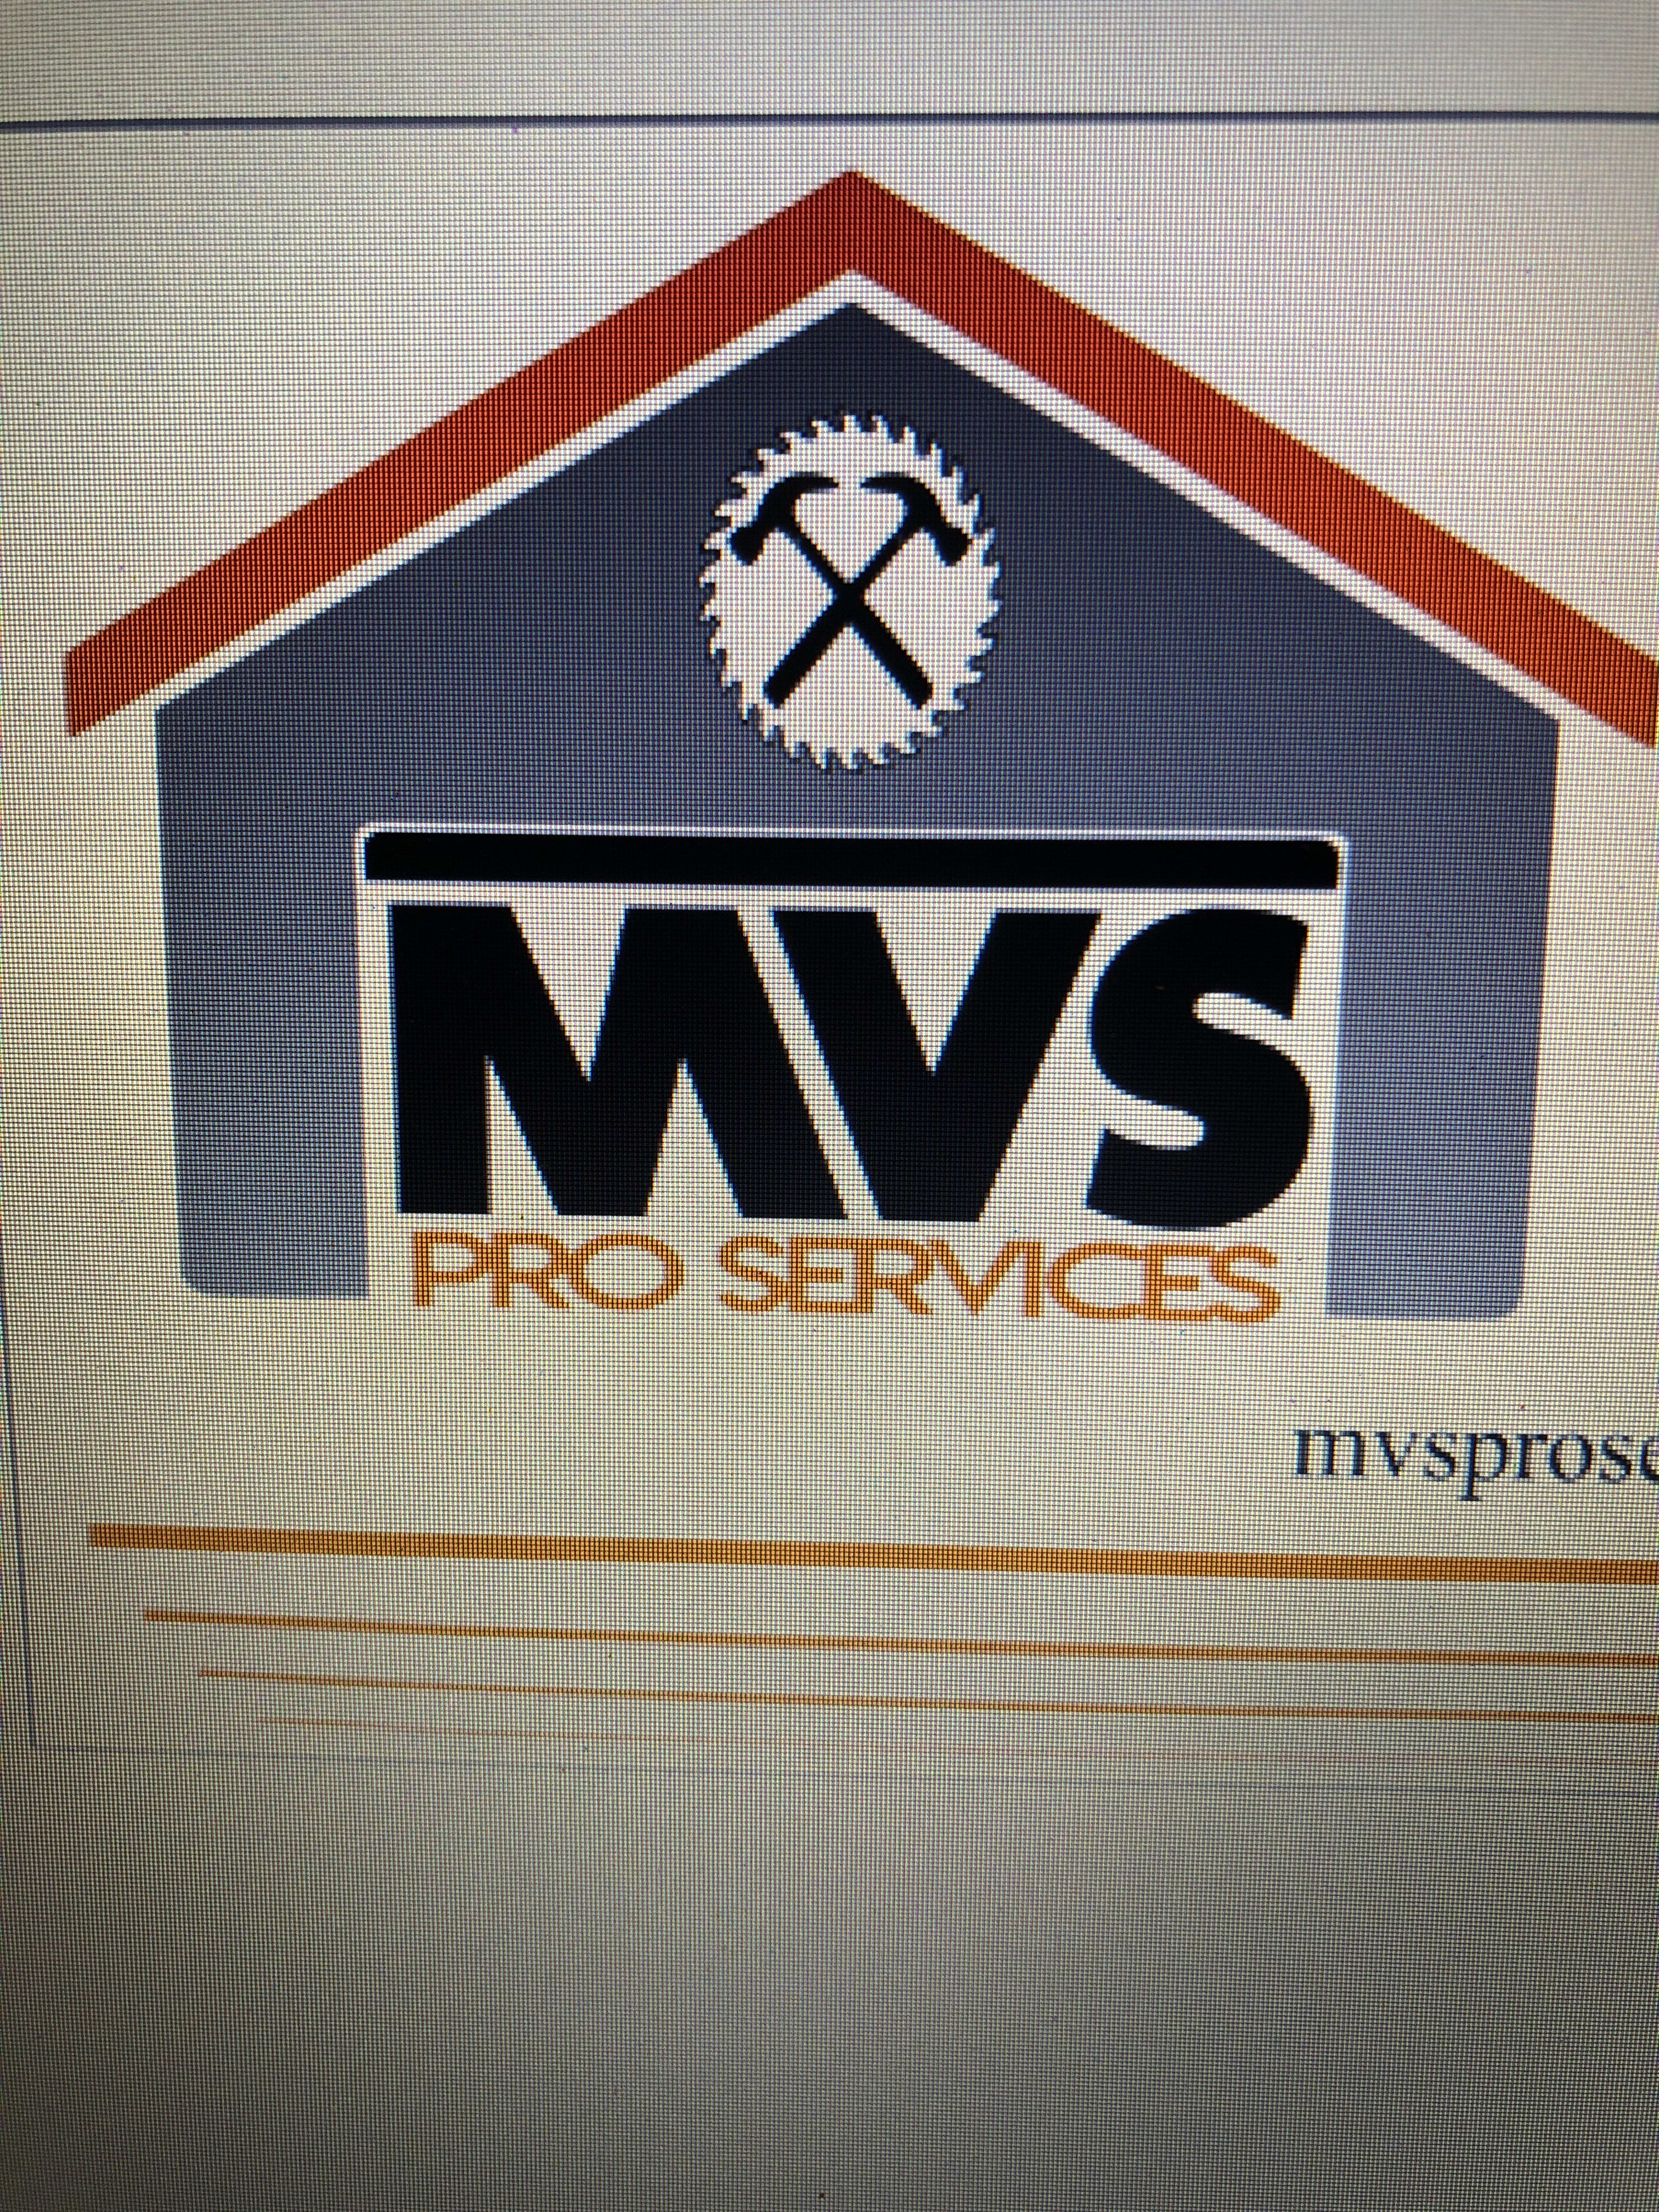 Mvs Pro Services